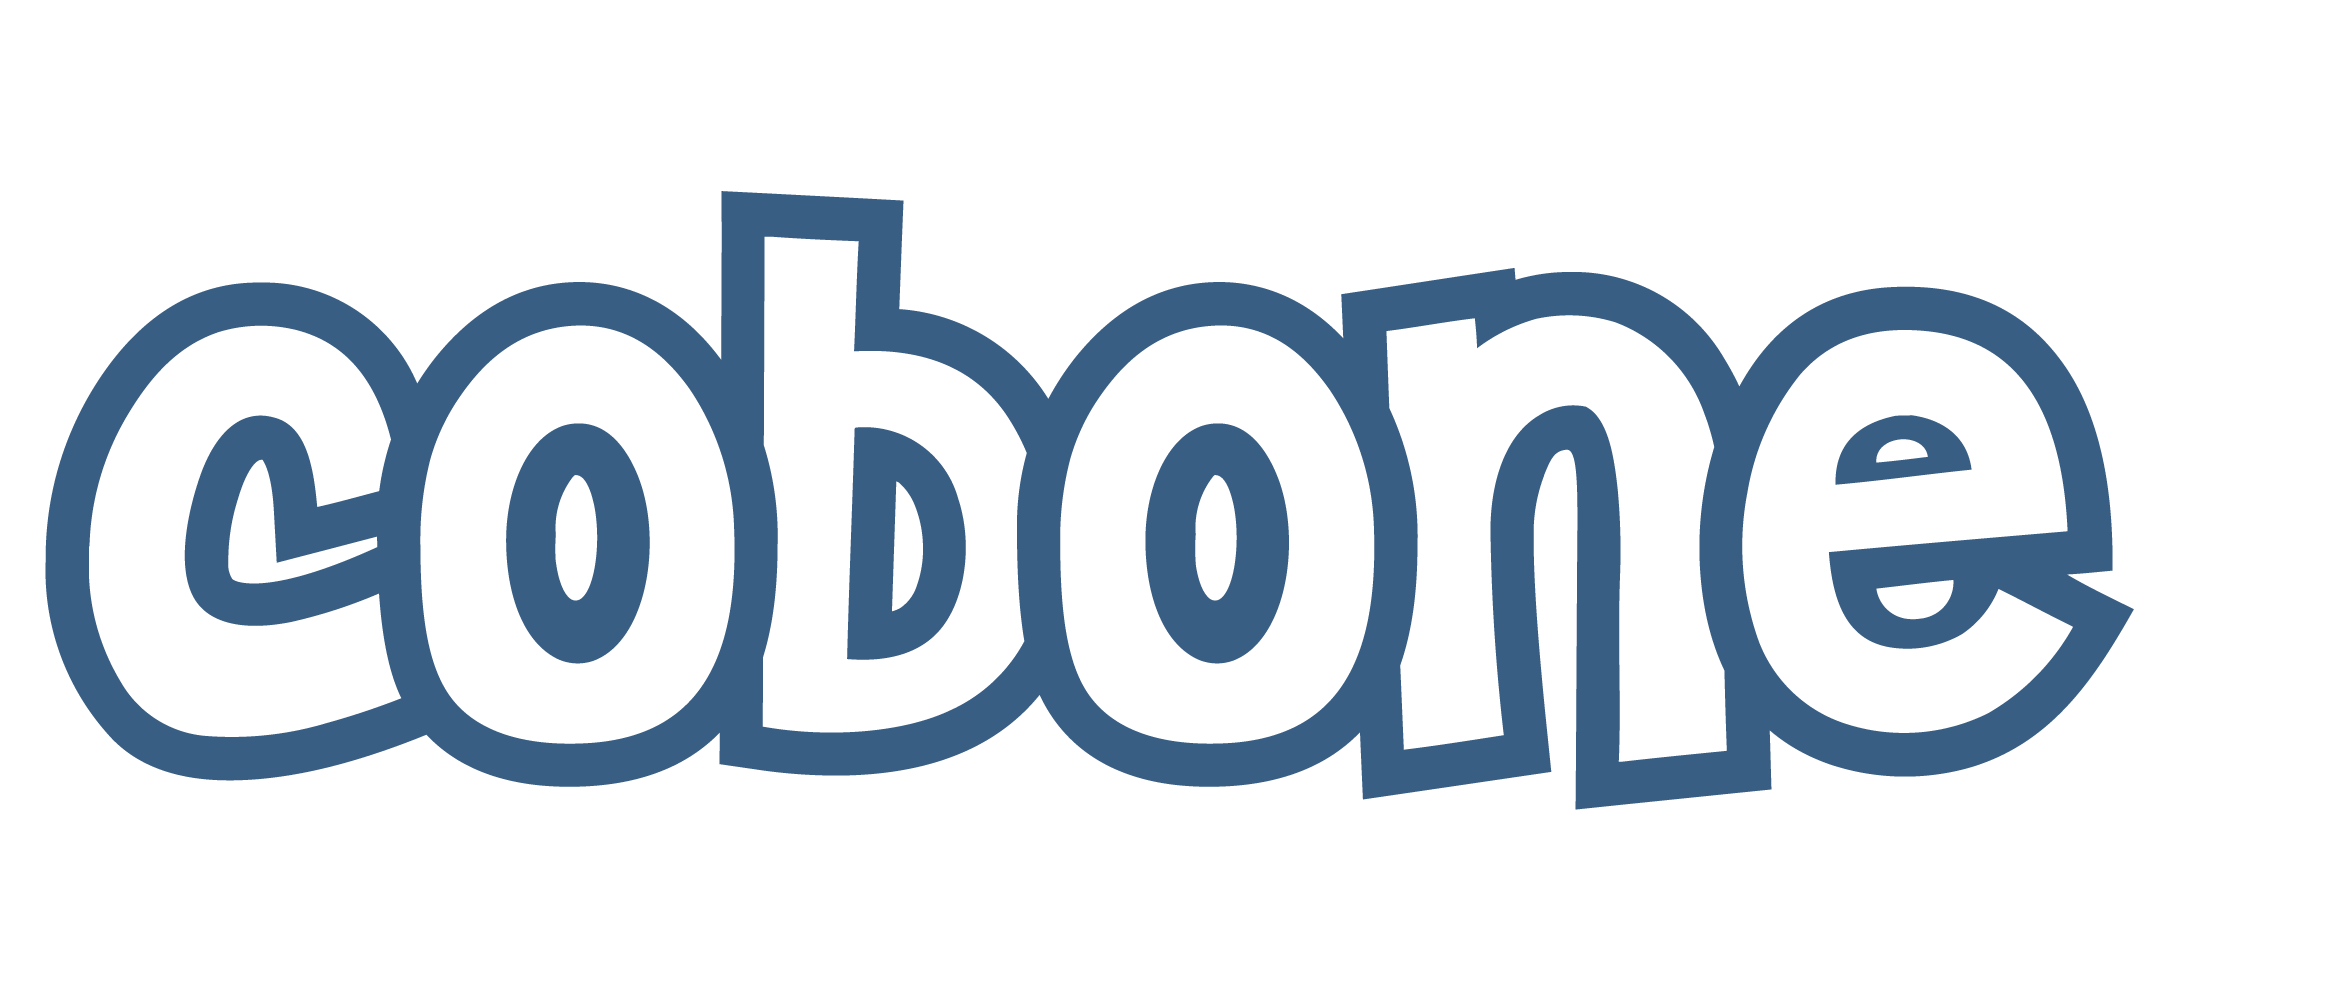 Cobone.com